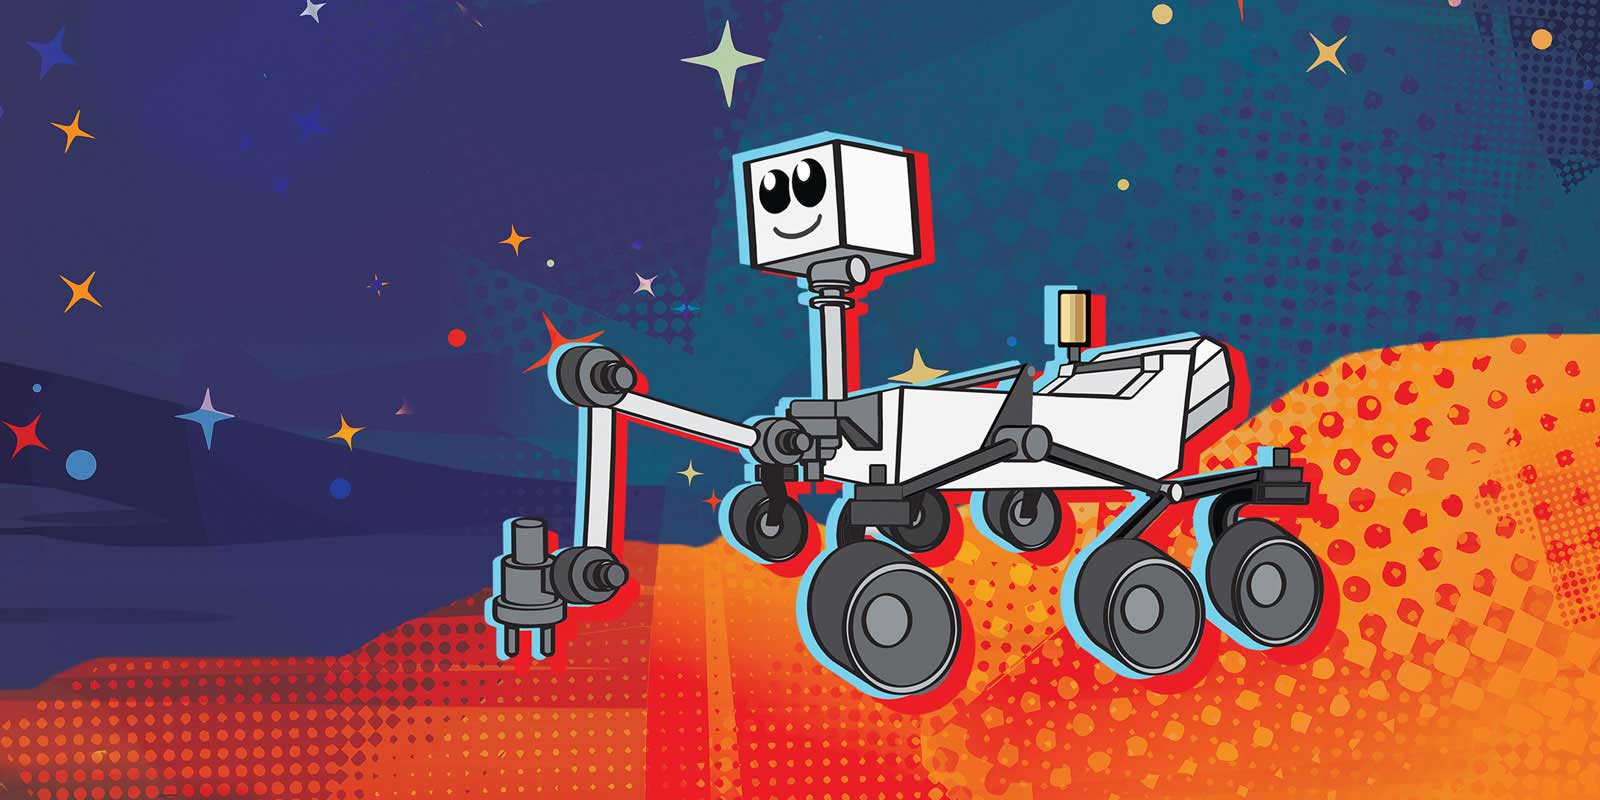 Rover su Marte: un sondaggio per nominare il nuovo robot d'esplorazione thumbnail